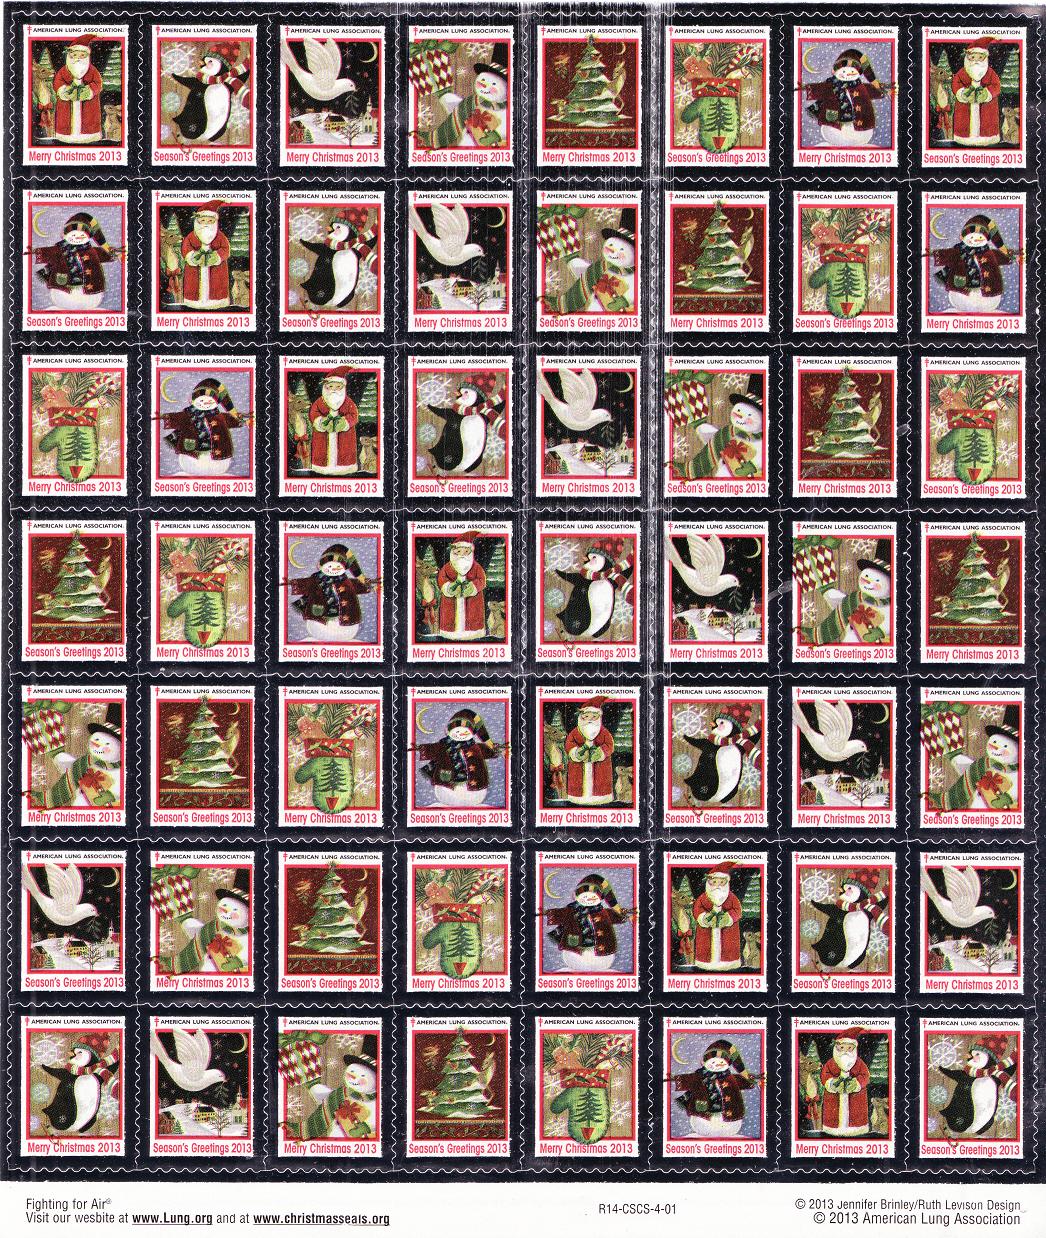 113-1x1, 2013 U.S. National Christmas Seals, R14-CSCS-4-01, sheet of 56 seals